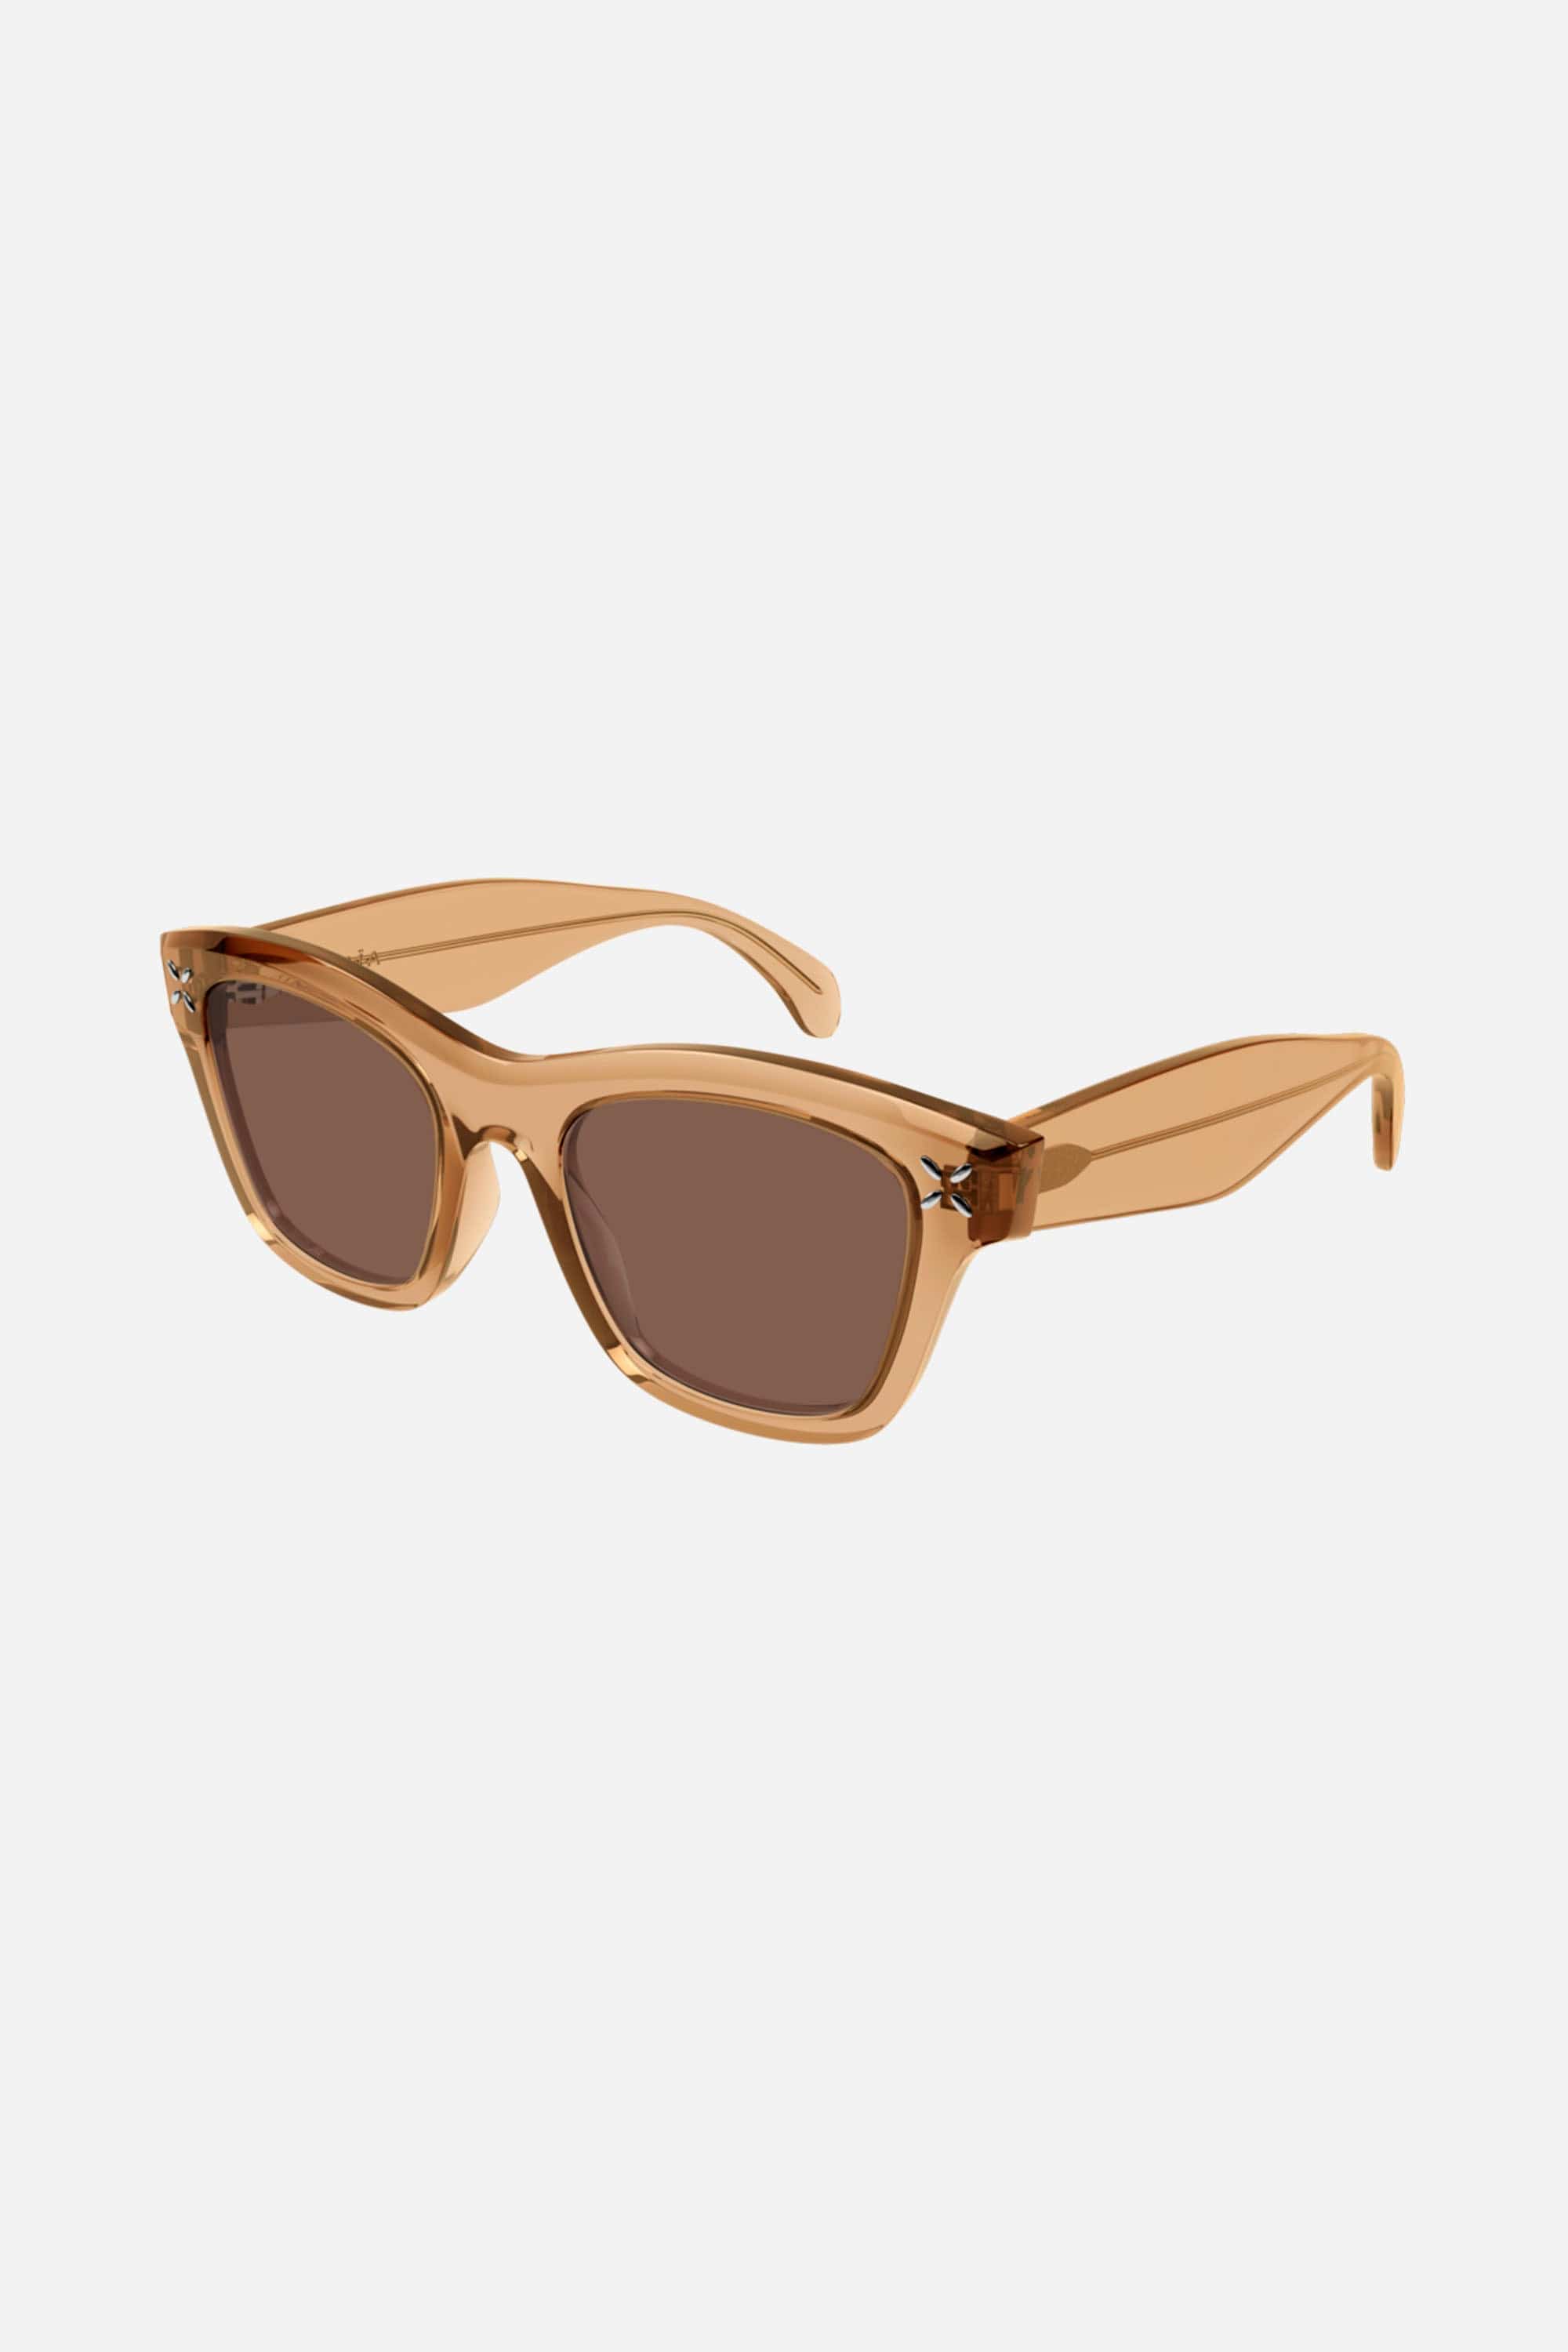 Alaia cat-eye crystal sunglasses - Eyewear Club